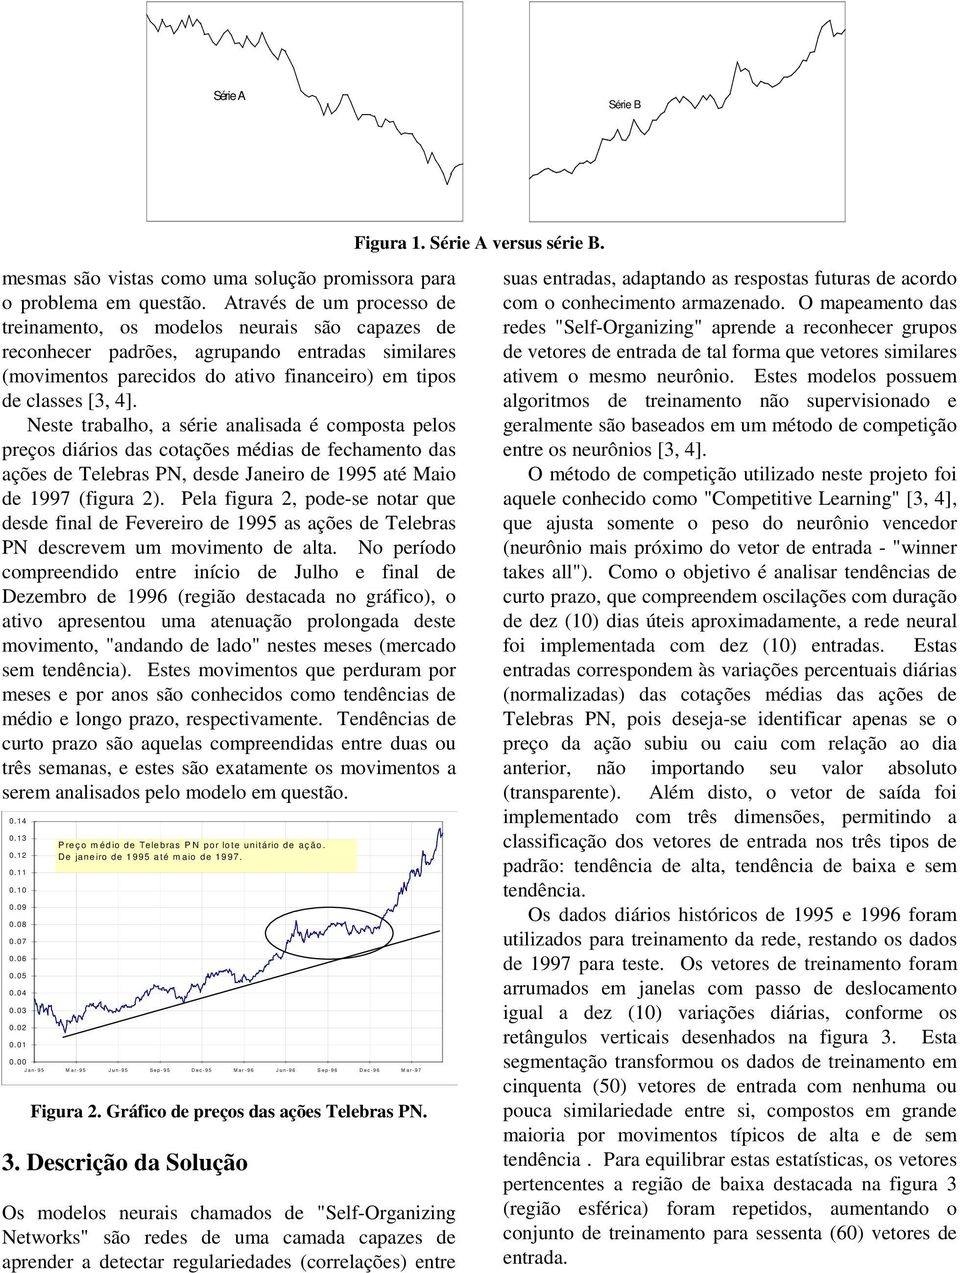 Neste trabalho, a série analisada é composta pelos preços diários das cotações médias de fechamento das ações de Telebras PN, desde Janeiro de 1995 até Maio de 1997 (figura 2).